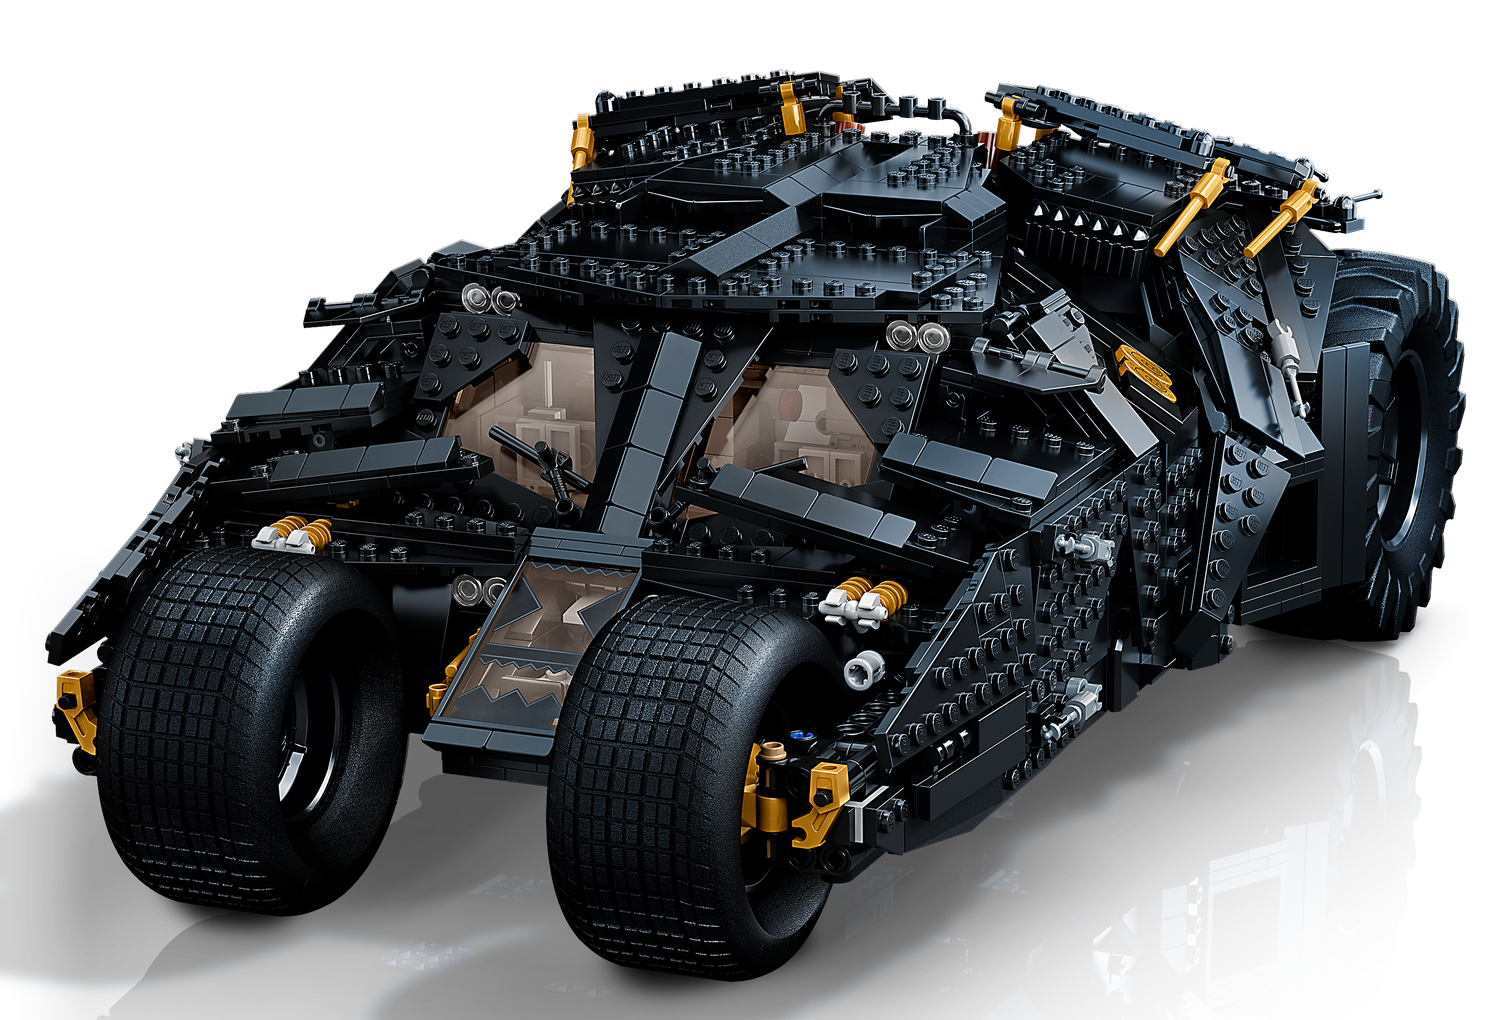 LEGO® DC Batman™ Batmobile™ Tumbler